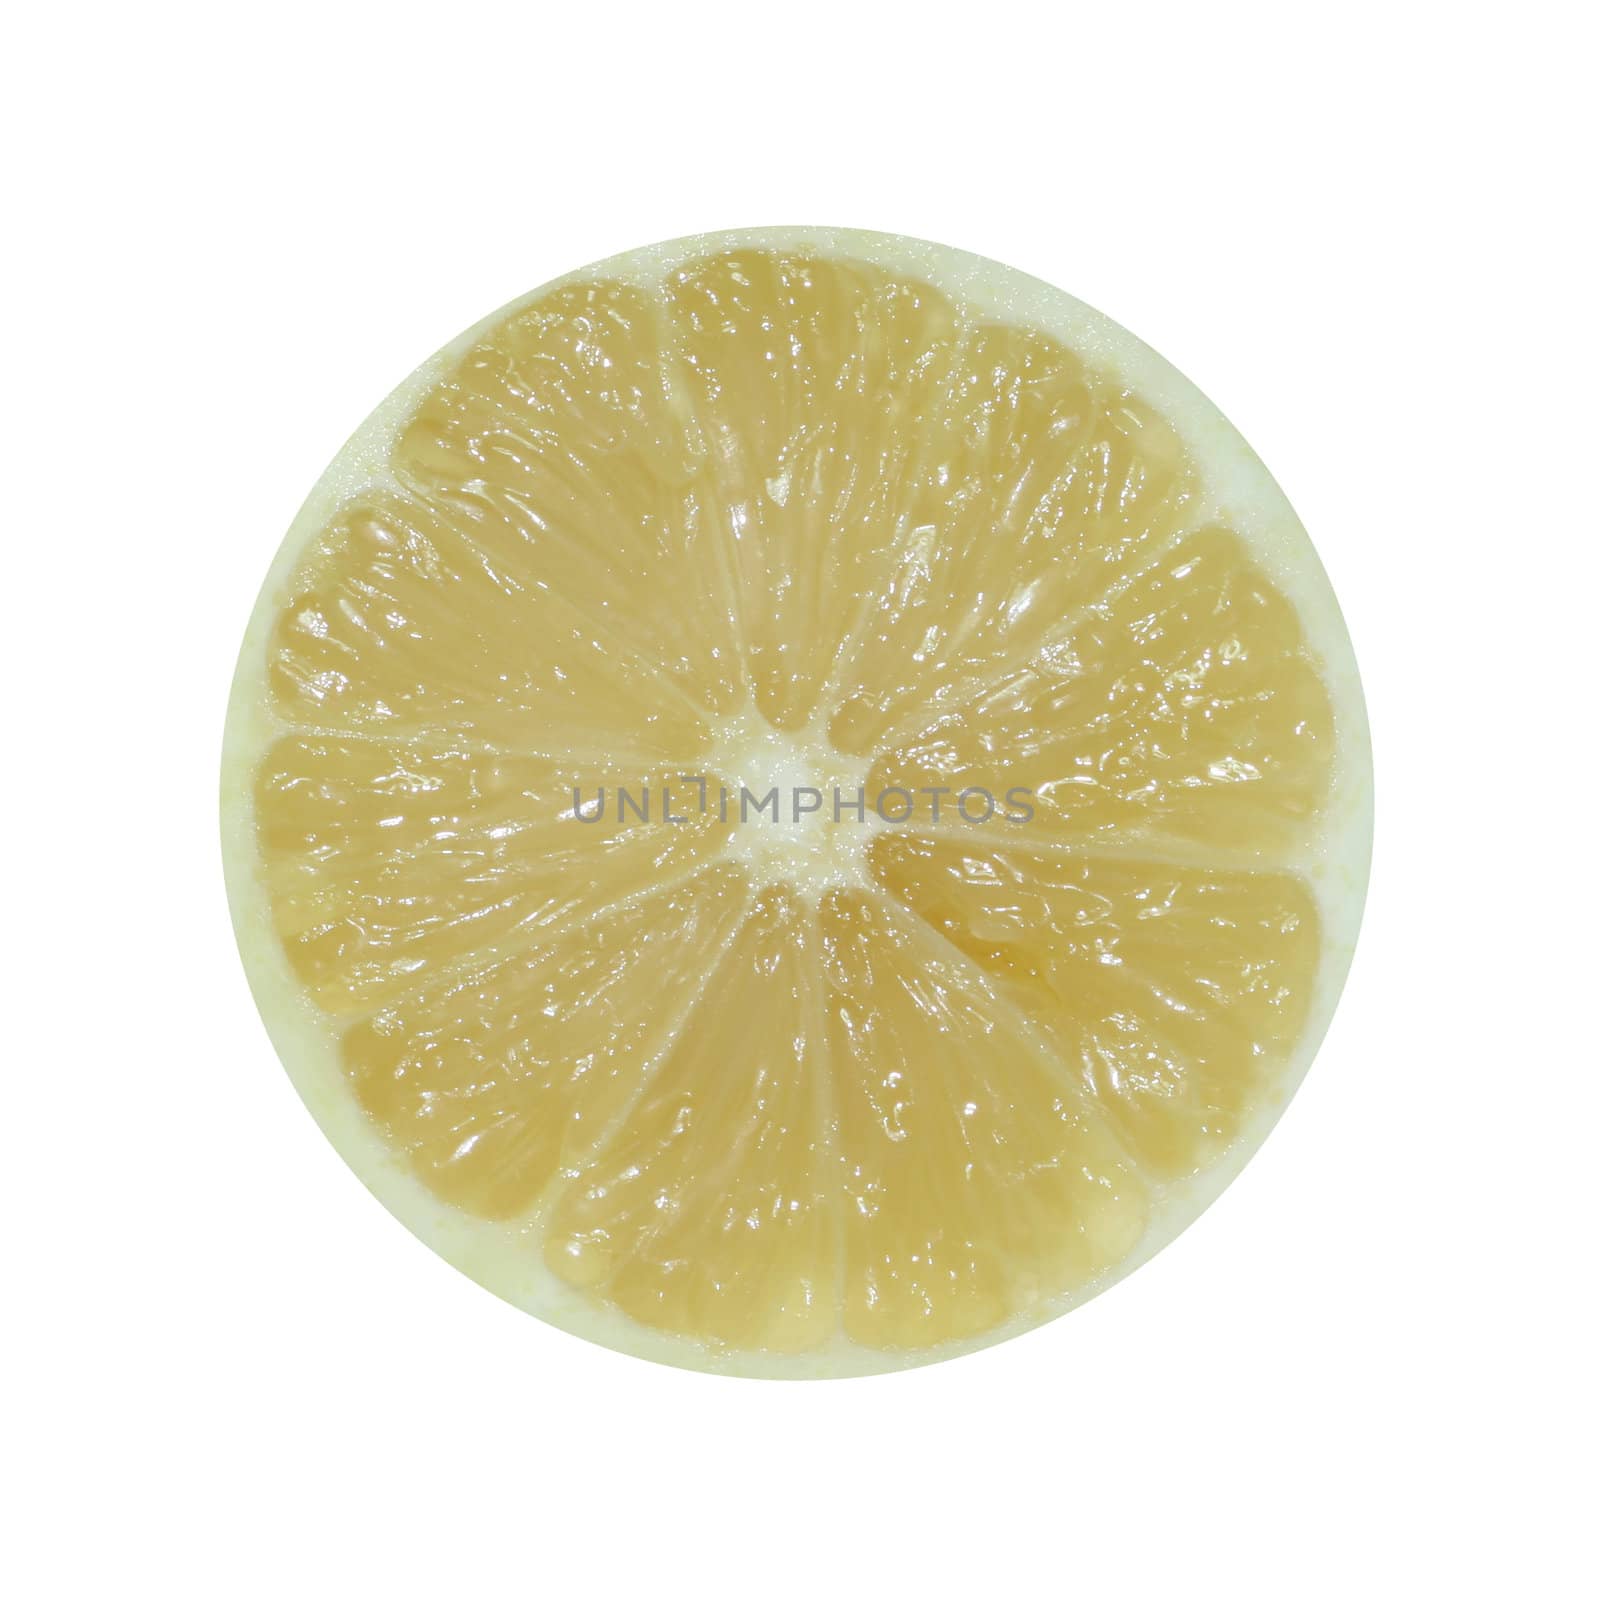 Lemon slice isolated in white